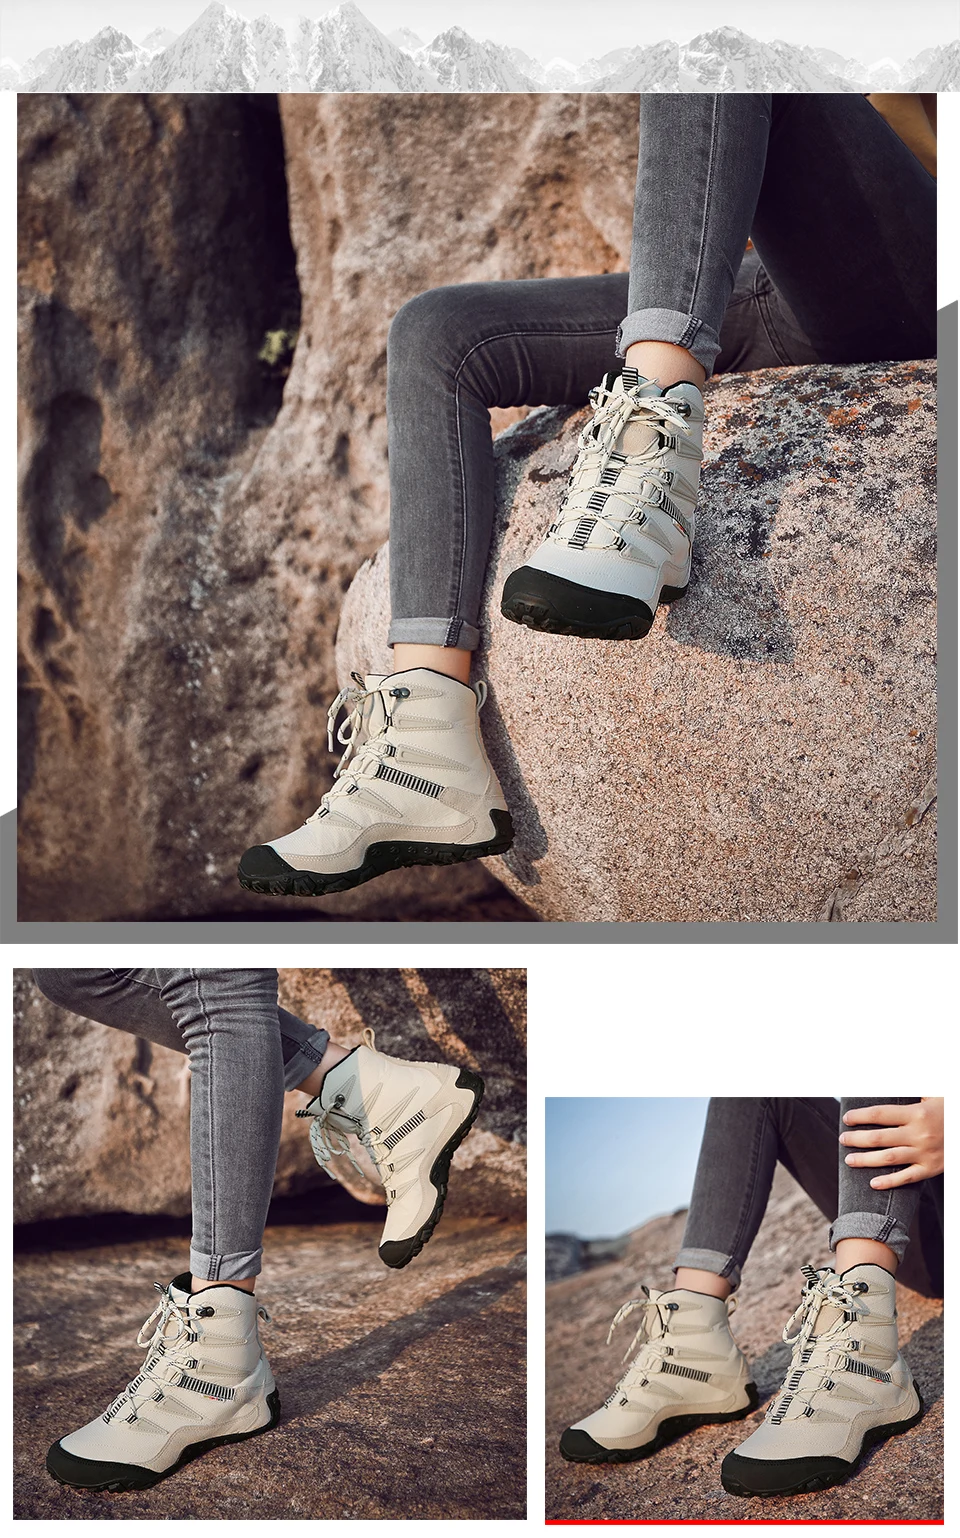 XIANG GUAN Man Hiking Shoes Men Waterproof Plush Warm High Top Climbing Mountain Tactical Boots Outdoor Sports Trekking Sneakers